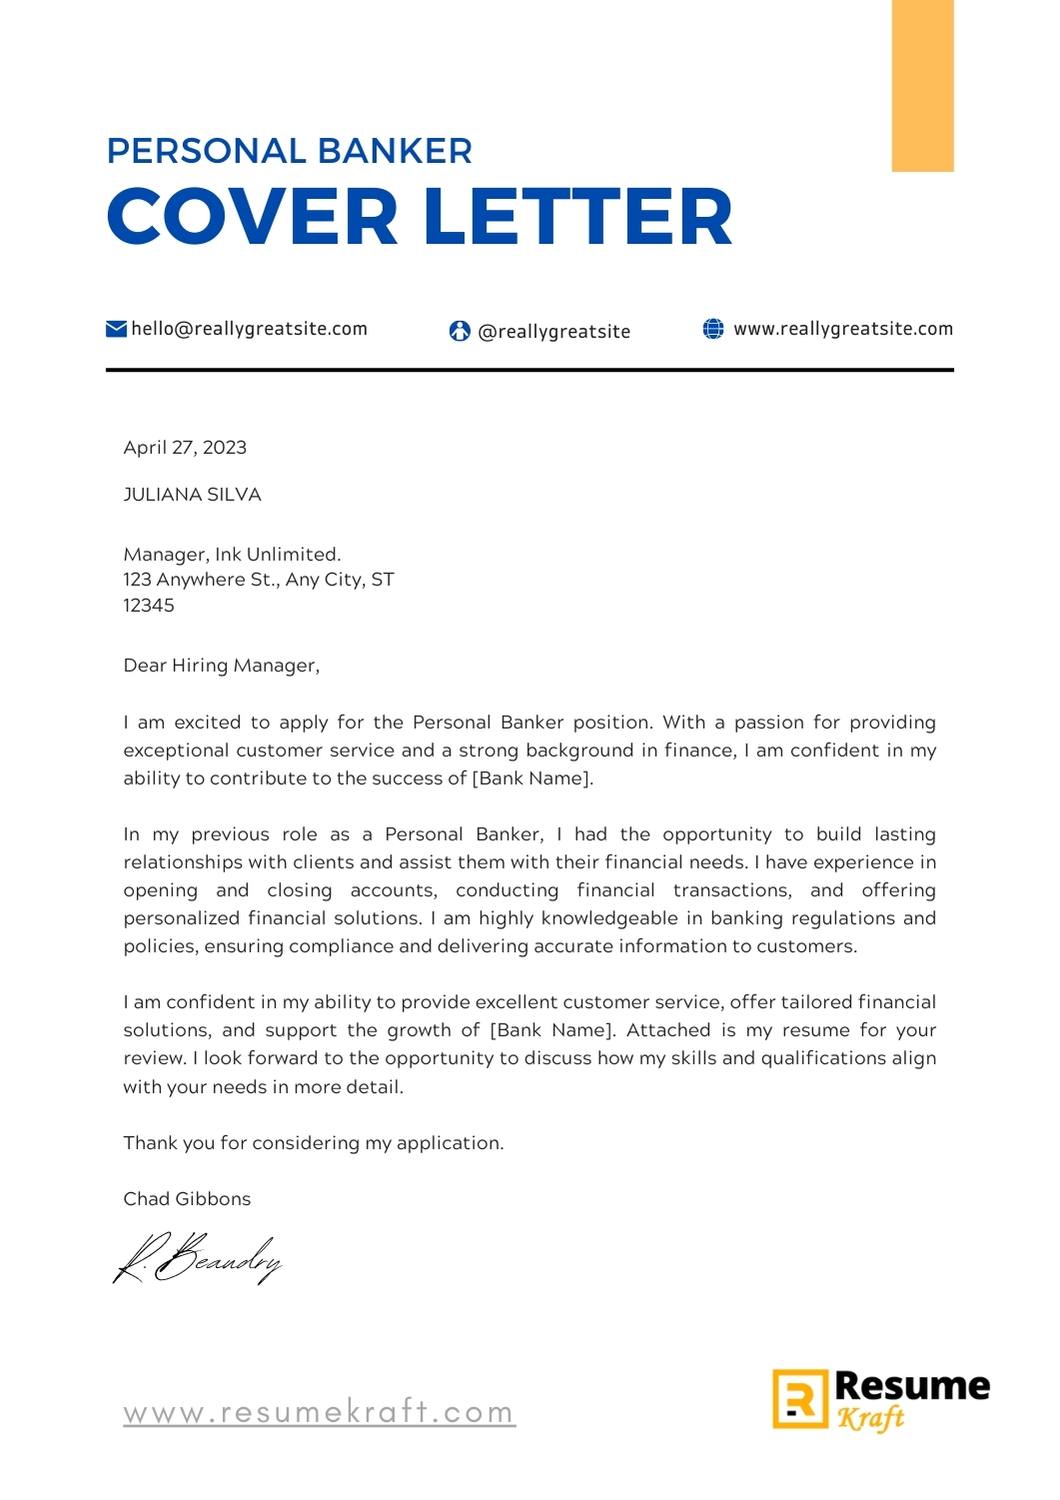 application letter for banker